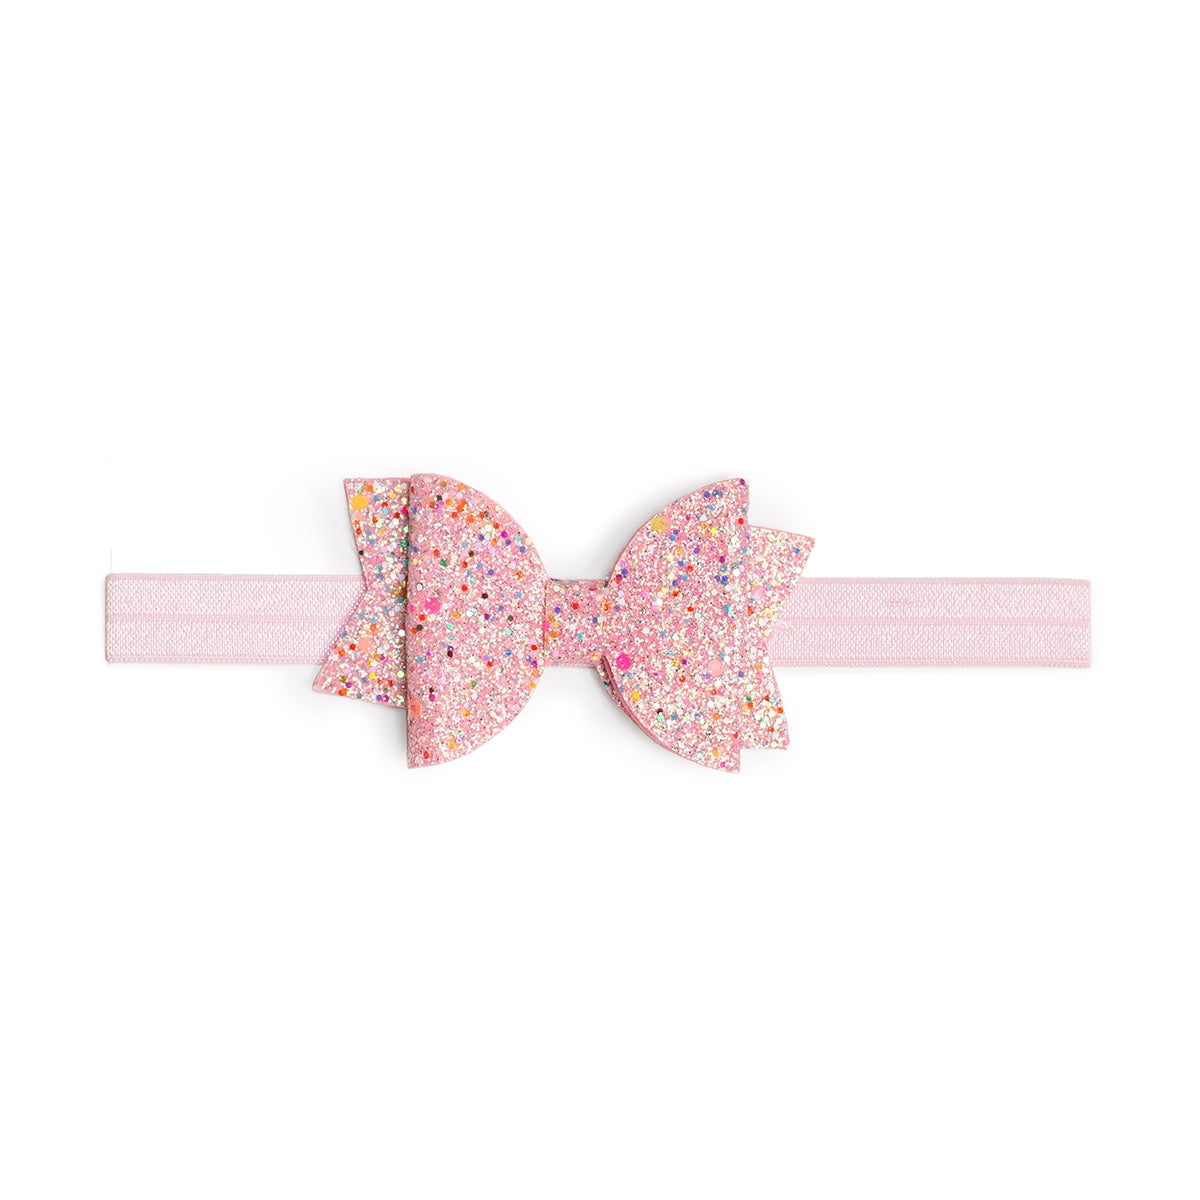 Pink Sprinkle Bow Baby Headband - Valentine's Day Baby - HoneyBug 